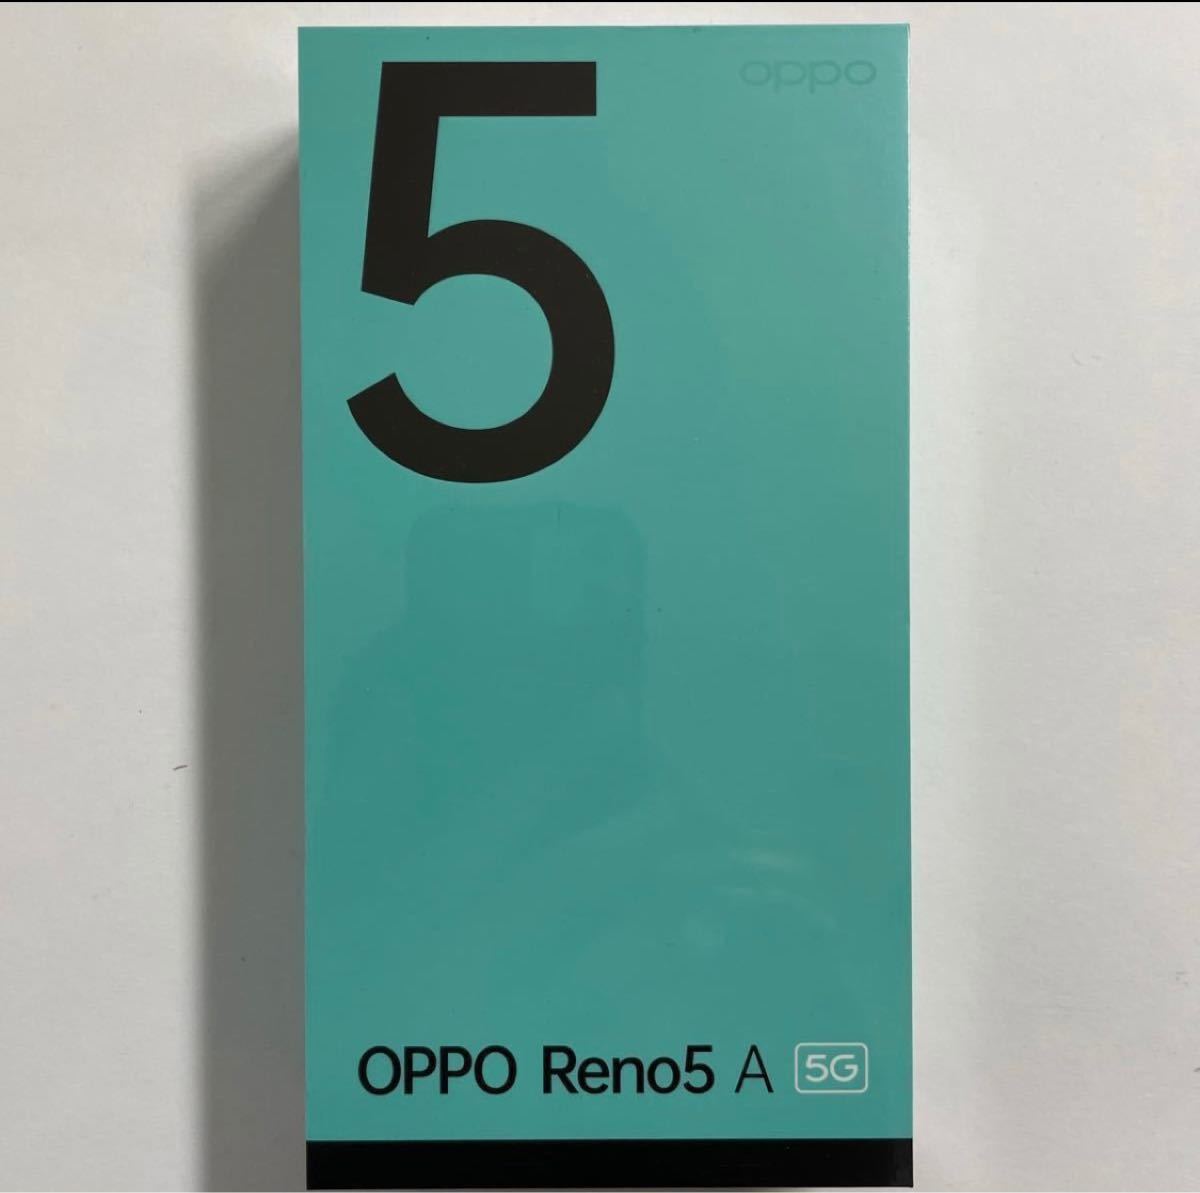 上品】 OPPO-OPPO Reno 5A (eSIM対応) アイスブルー ワイモバイル版 simフリー 新品未開封 シュリンク付 -  tedwinatrim.com